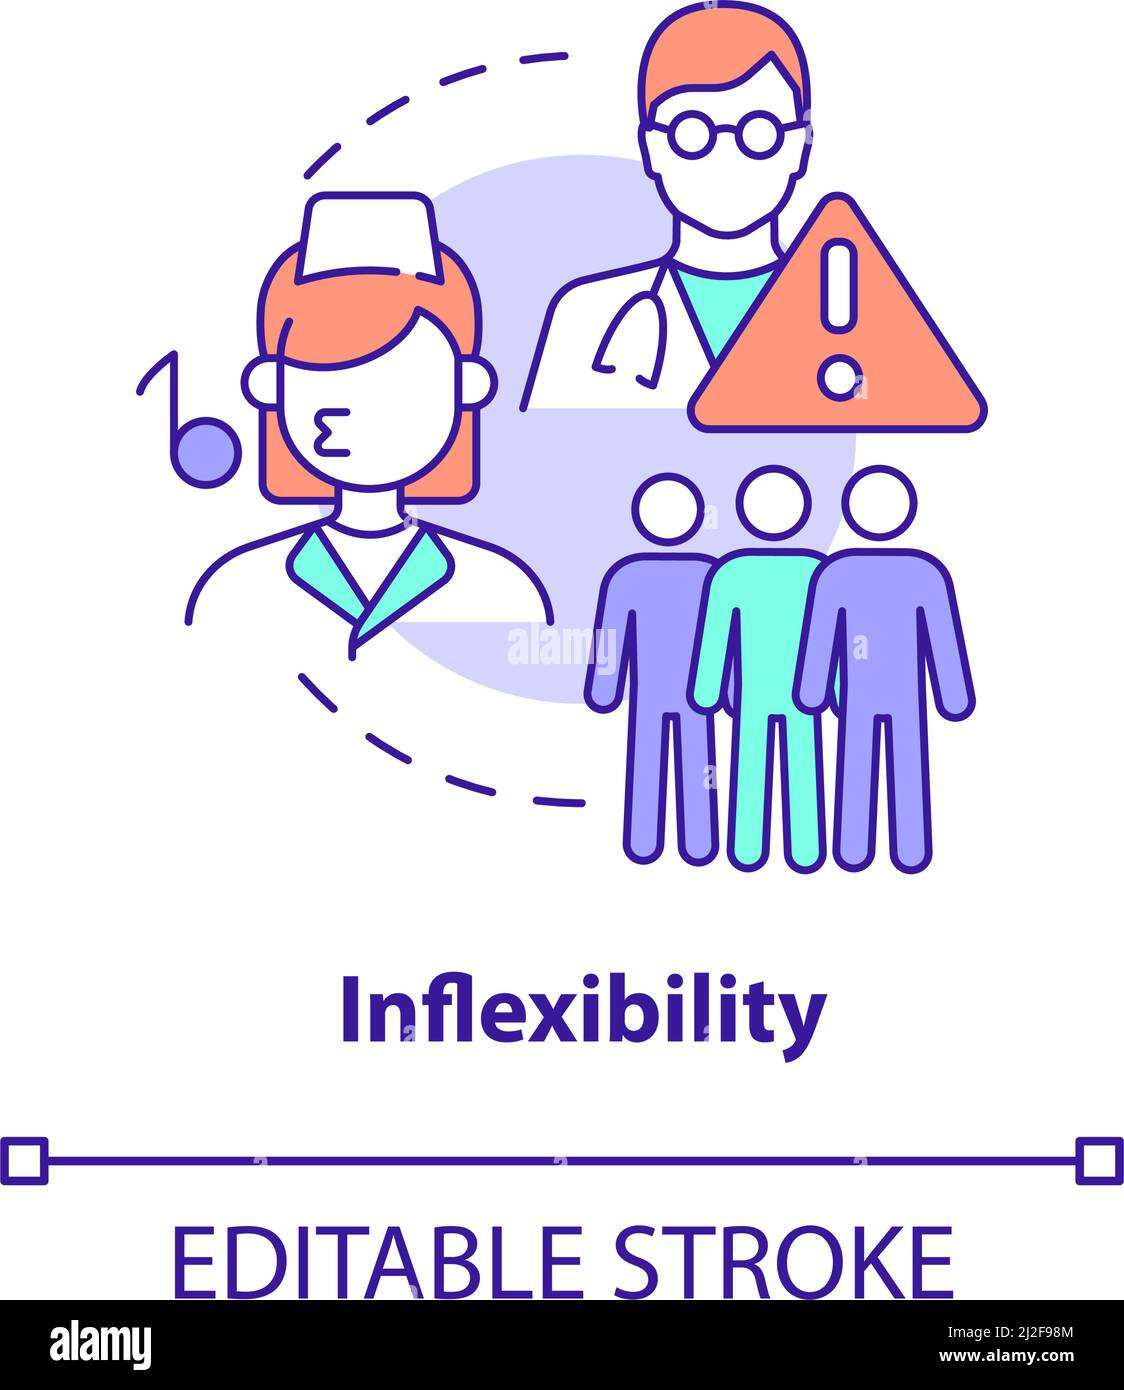 Inflexibility concept icon Stock Vector